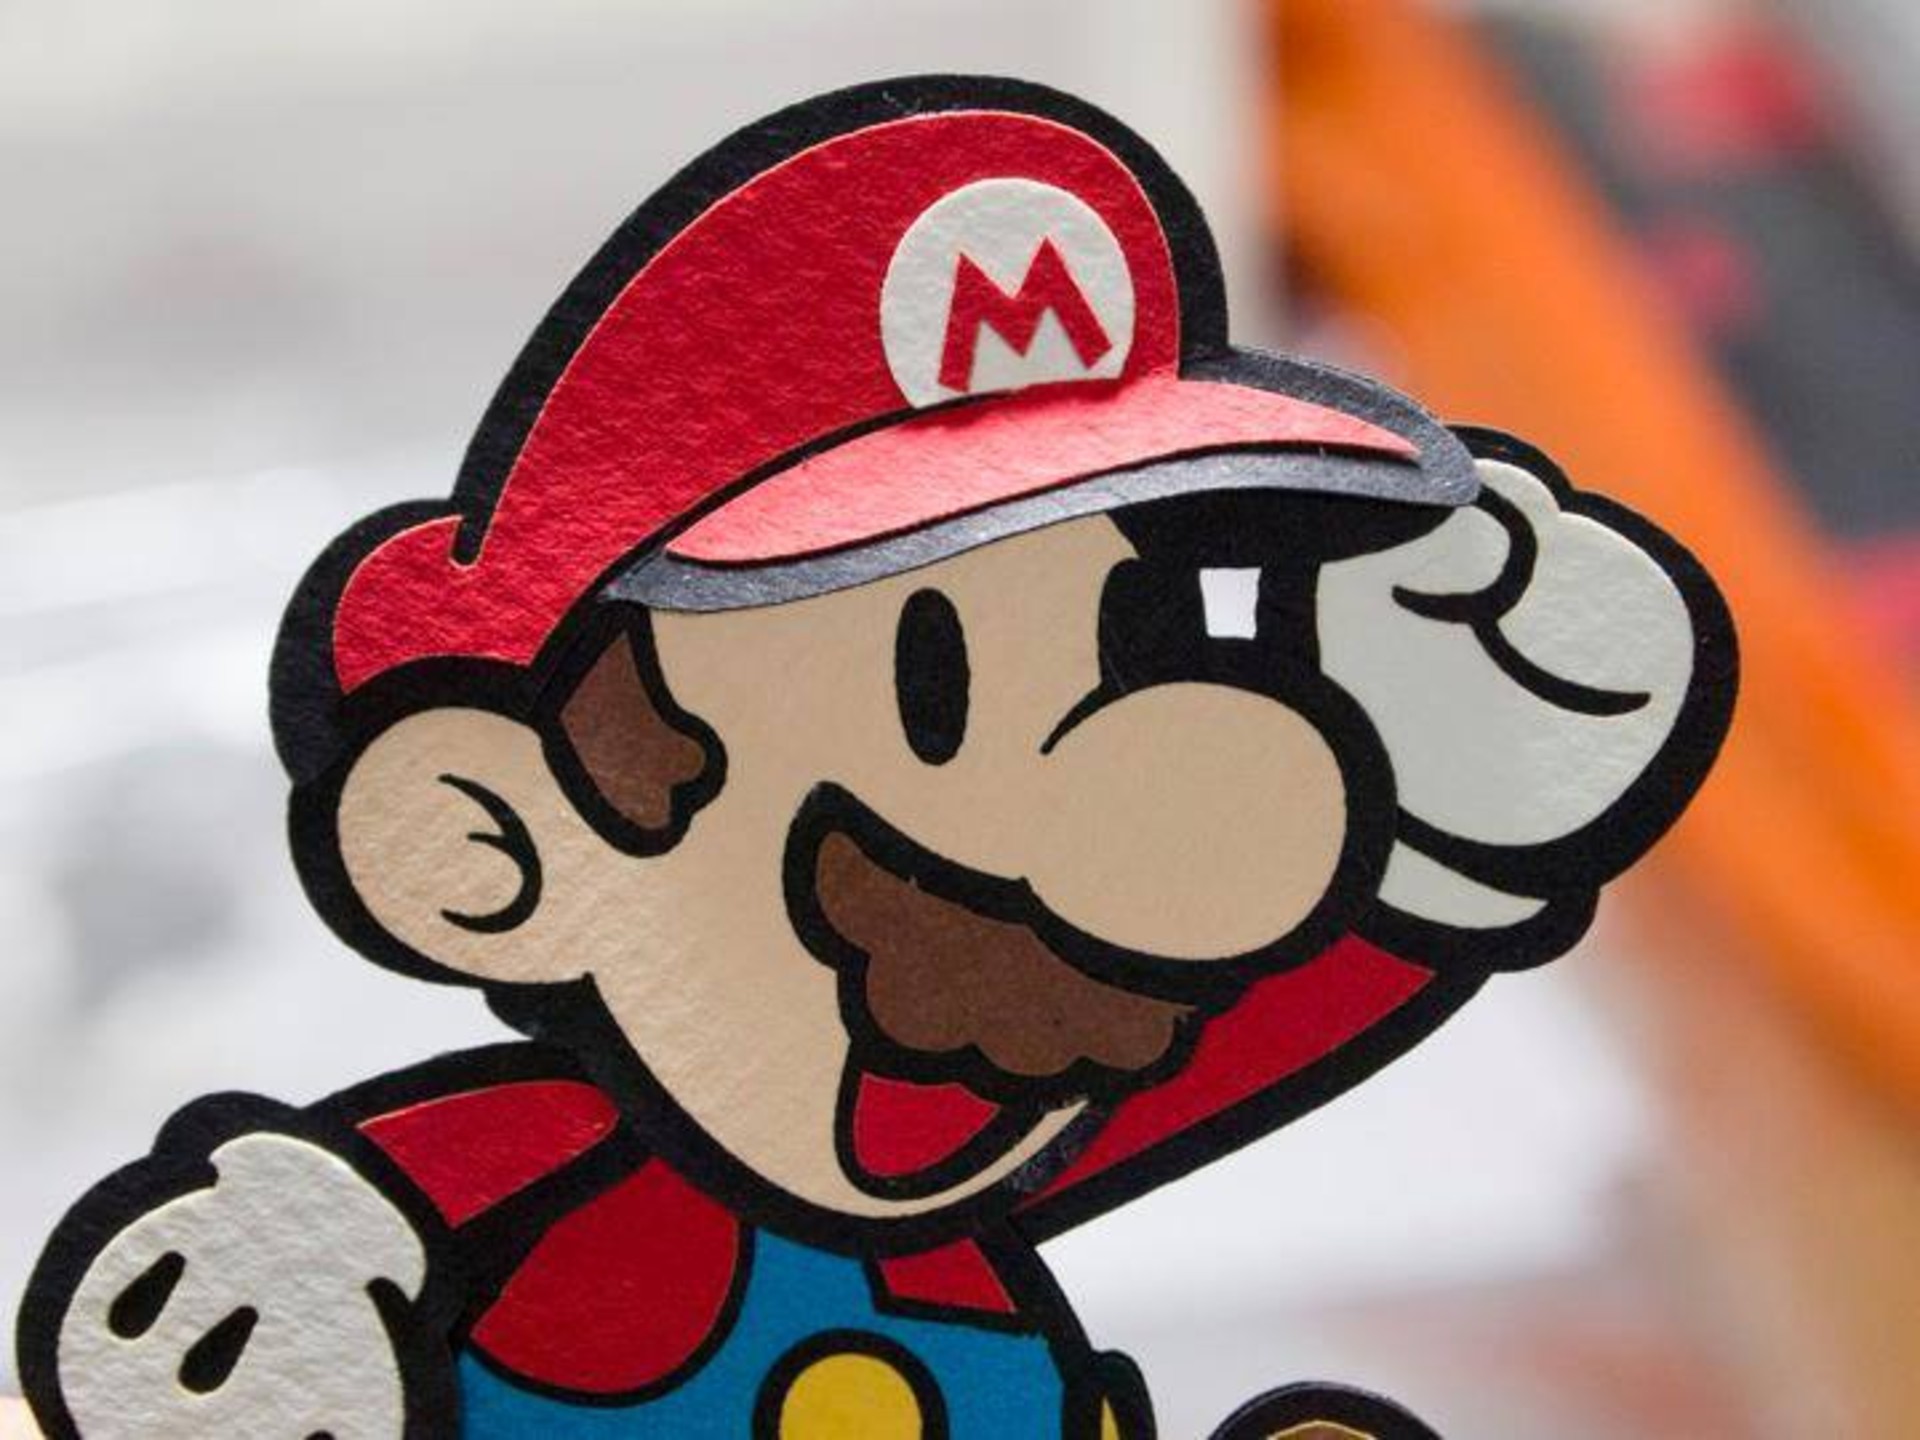 ตลับเกม Super Mario 64 ทำลายสถิติการประมูลสูงถึง 50 ล้านบาท!